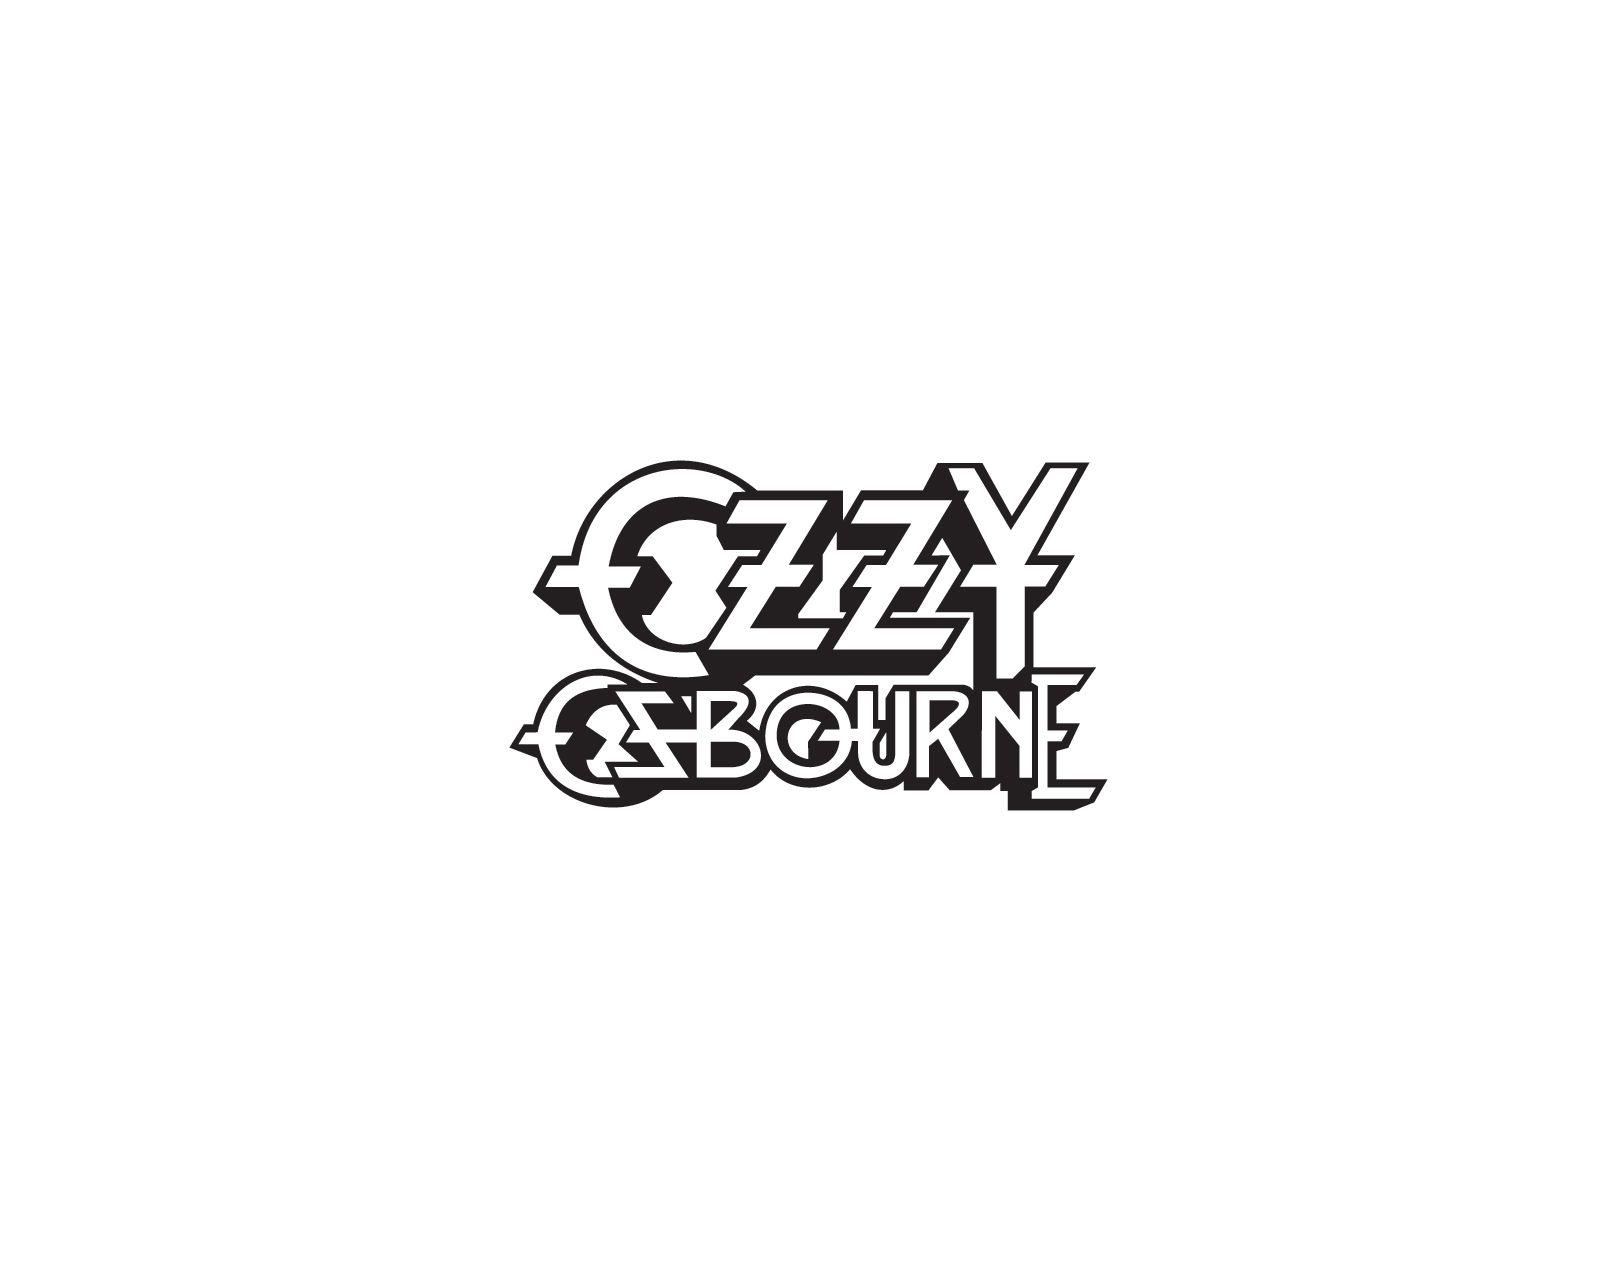 Ozzy Osbourne Band Logo - Ozzy Osbourne logo | Band logos - Rock band logos, metal bands logos ...